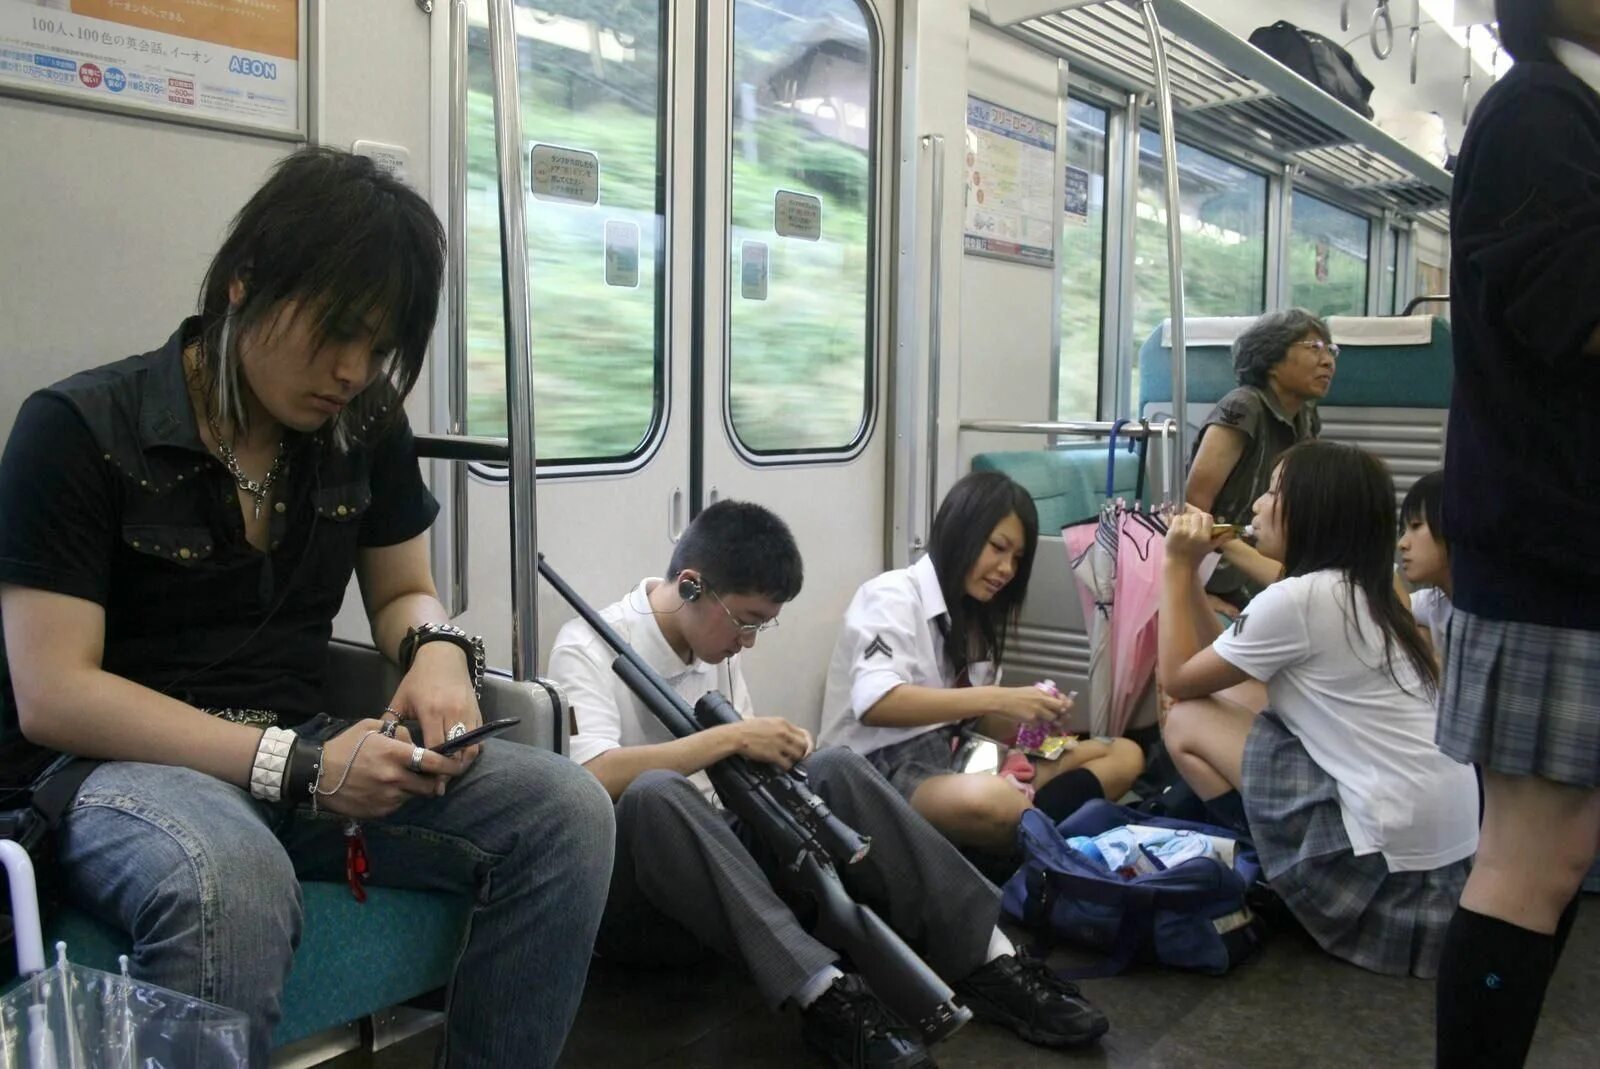 Японцы в транспорте. Японский общественный транспорт. Японские девушки в общественном транспорте. Японское метро. Извращенец в метро